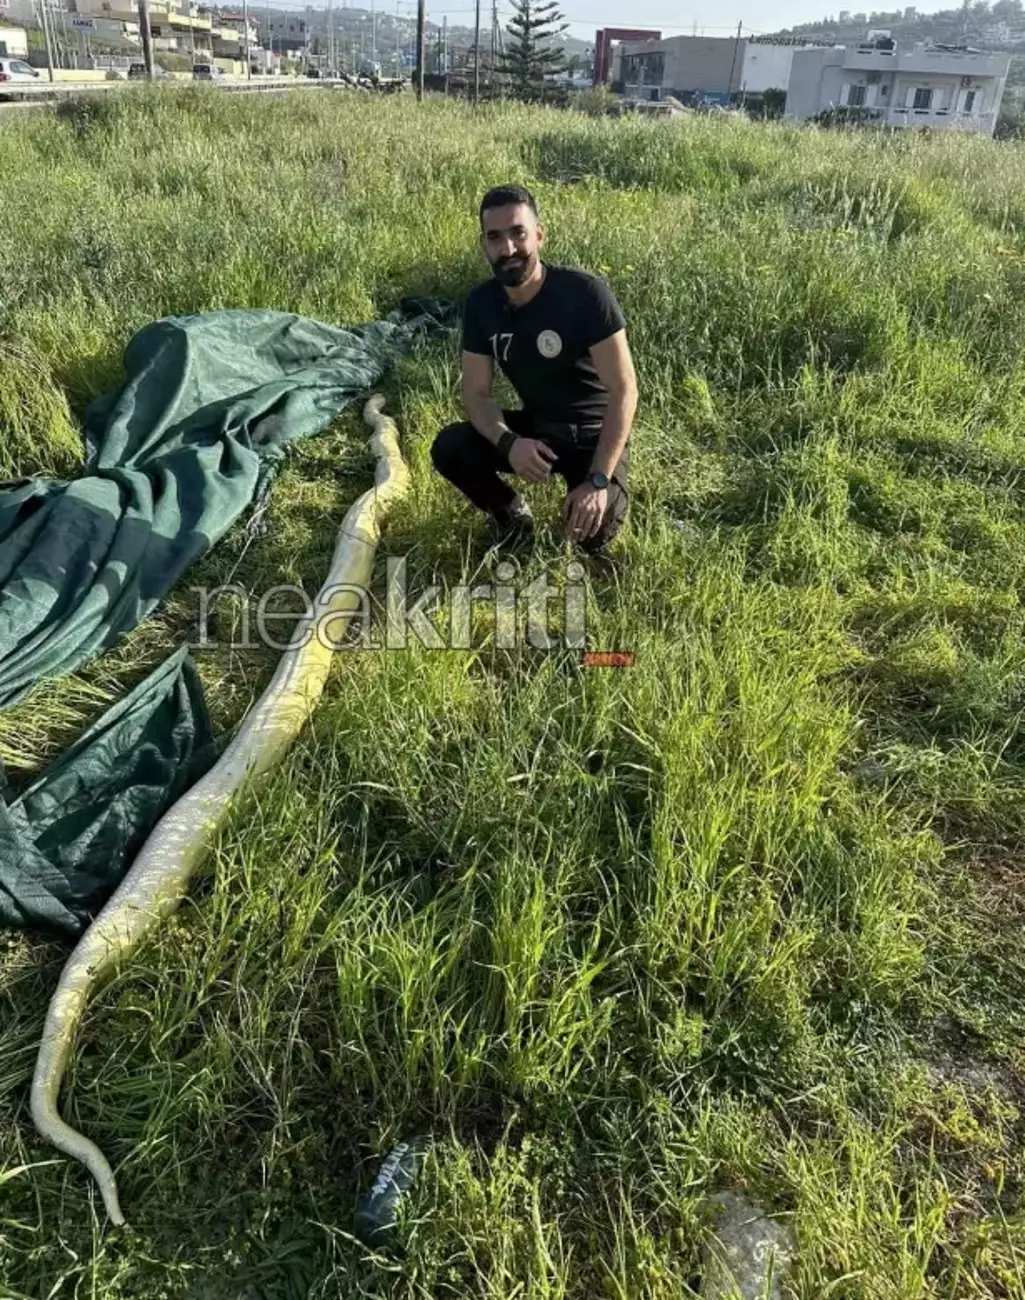 Ηράκλειο: Πύθωνας 5 μέτρων σε χωράφι! - Viral οι εικόνες με το μεγάλο φίδι